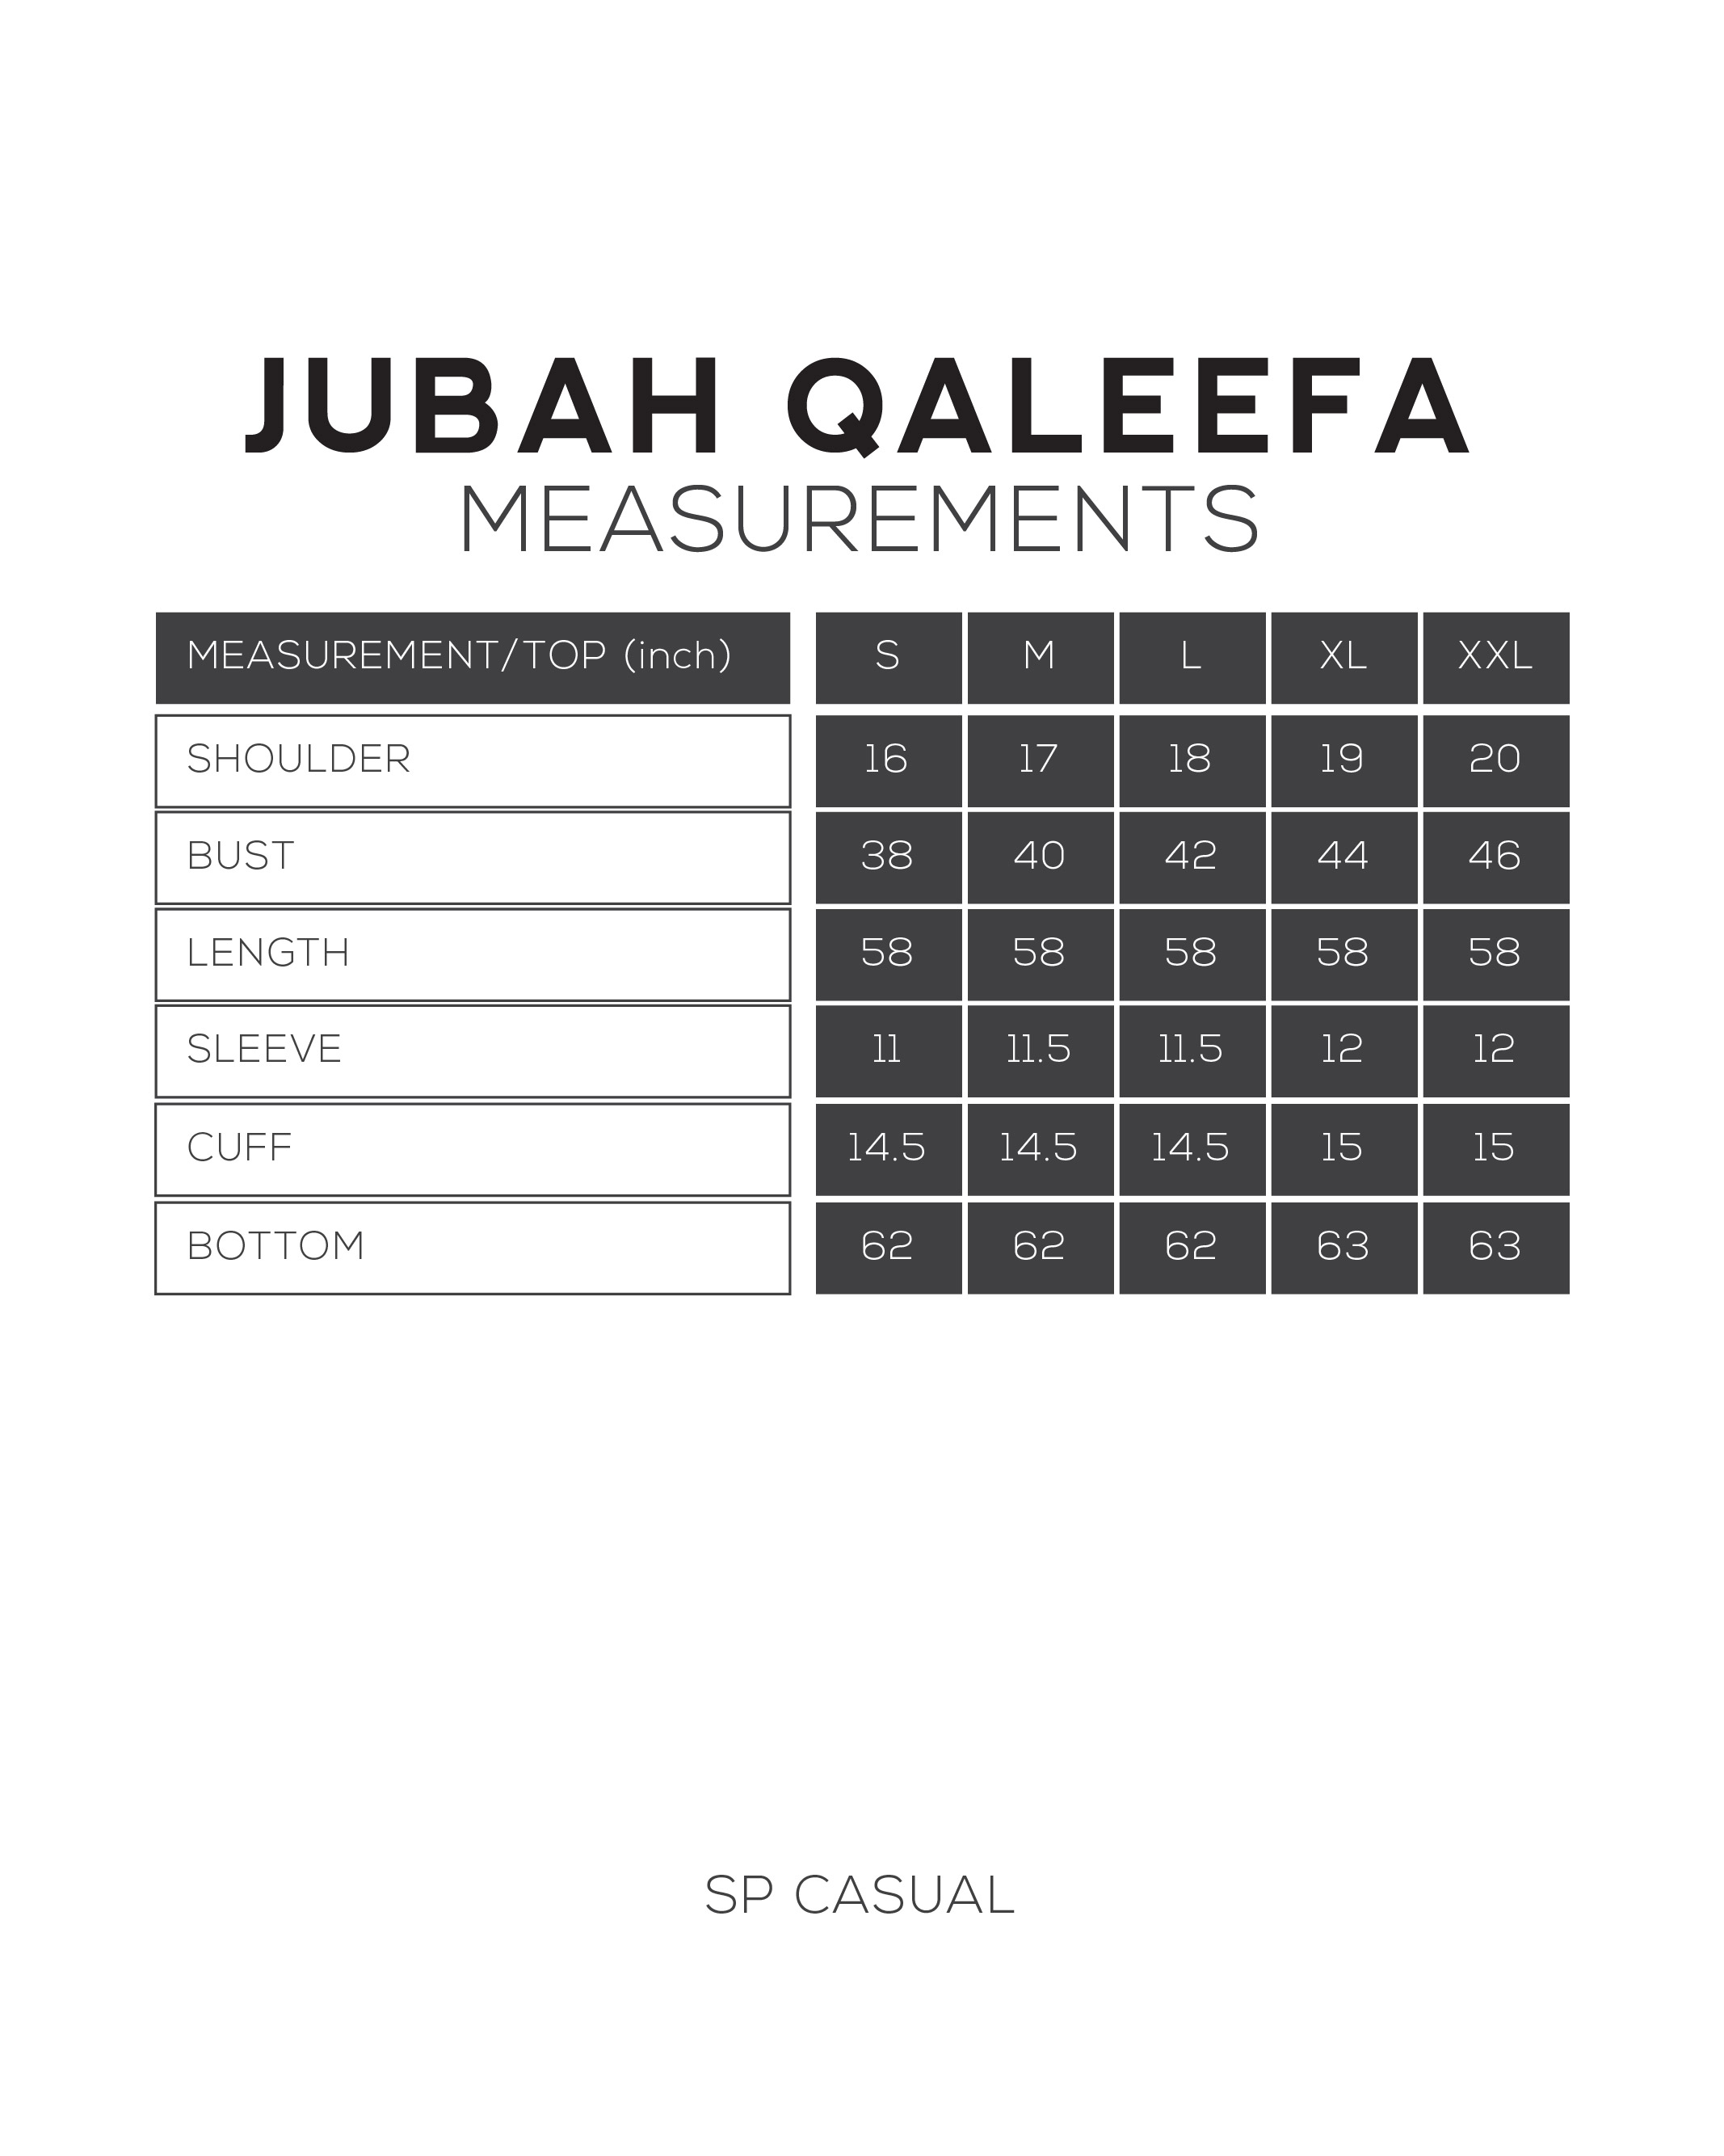 JUBAH QALEEFA IN S GREEN